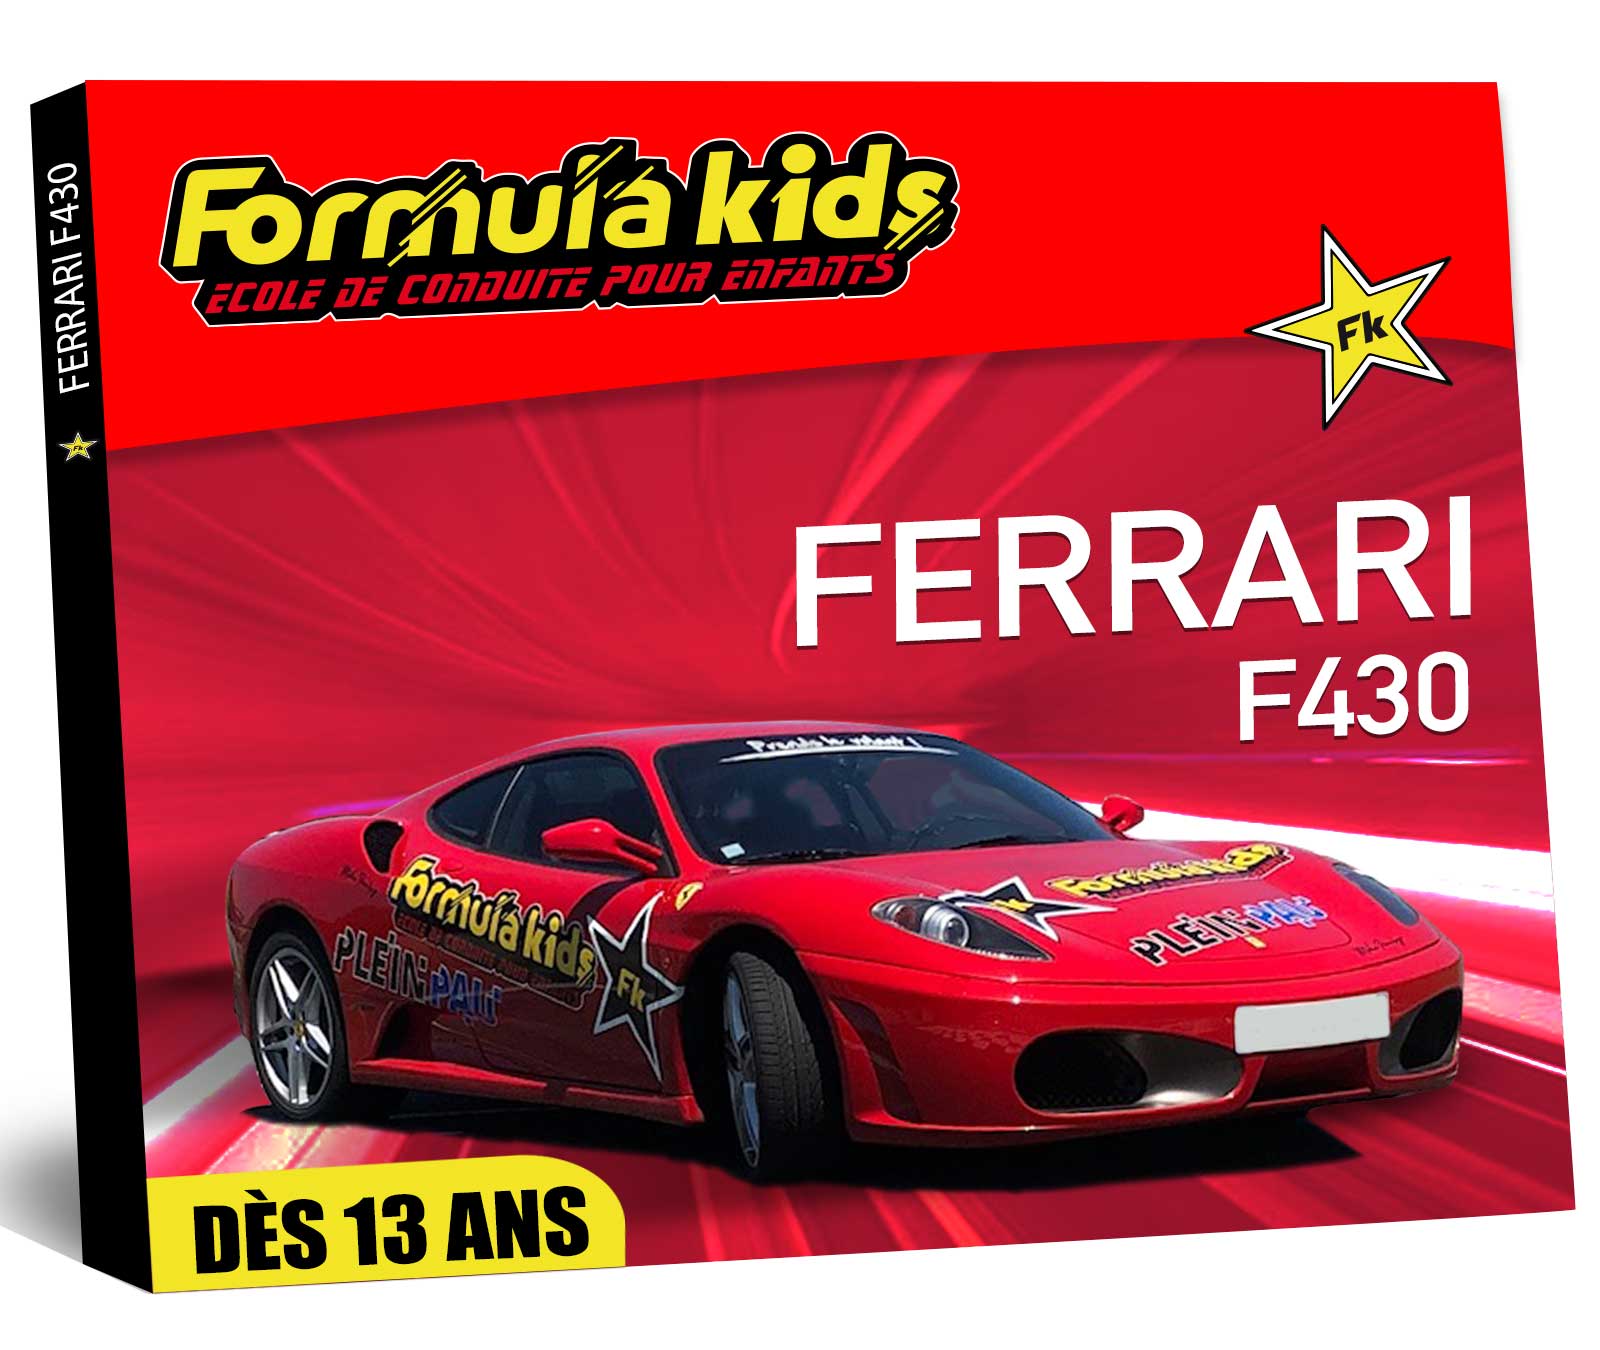 Ferrari - Conduire une Ferrari dès 13 ans - Formula Kids - Stage de conduite enfant - Stage de pilotage sur As'Phalte - Stage Junior - F430 - Stage Junior - Cadeau - Idée anniversaire - Smart Box - Idée Cadeau - Loisir - Famille - Pilotage - - Pilotage GT - Pilotage enfant - Ferrari - F430 -